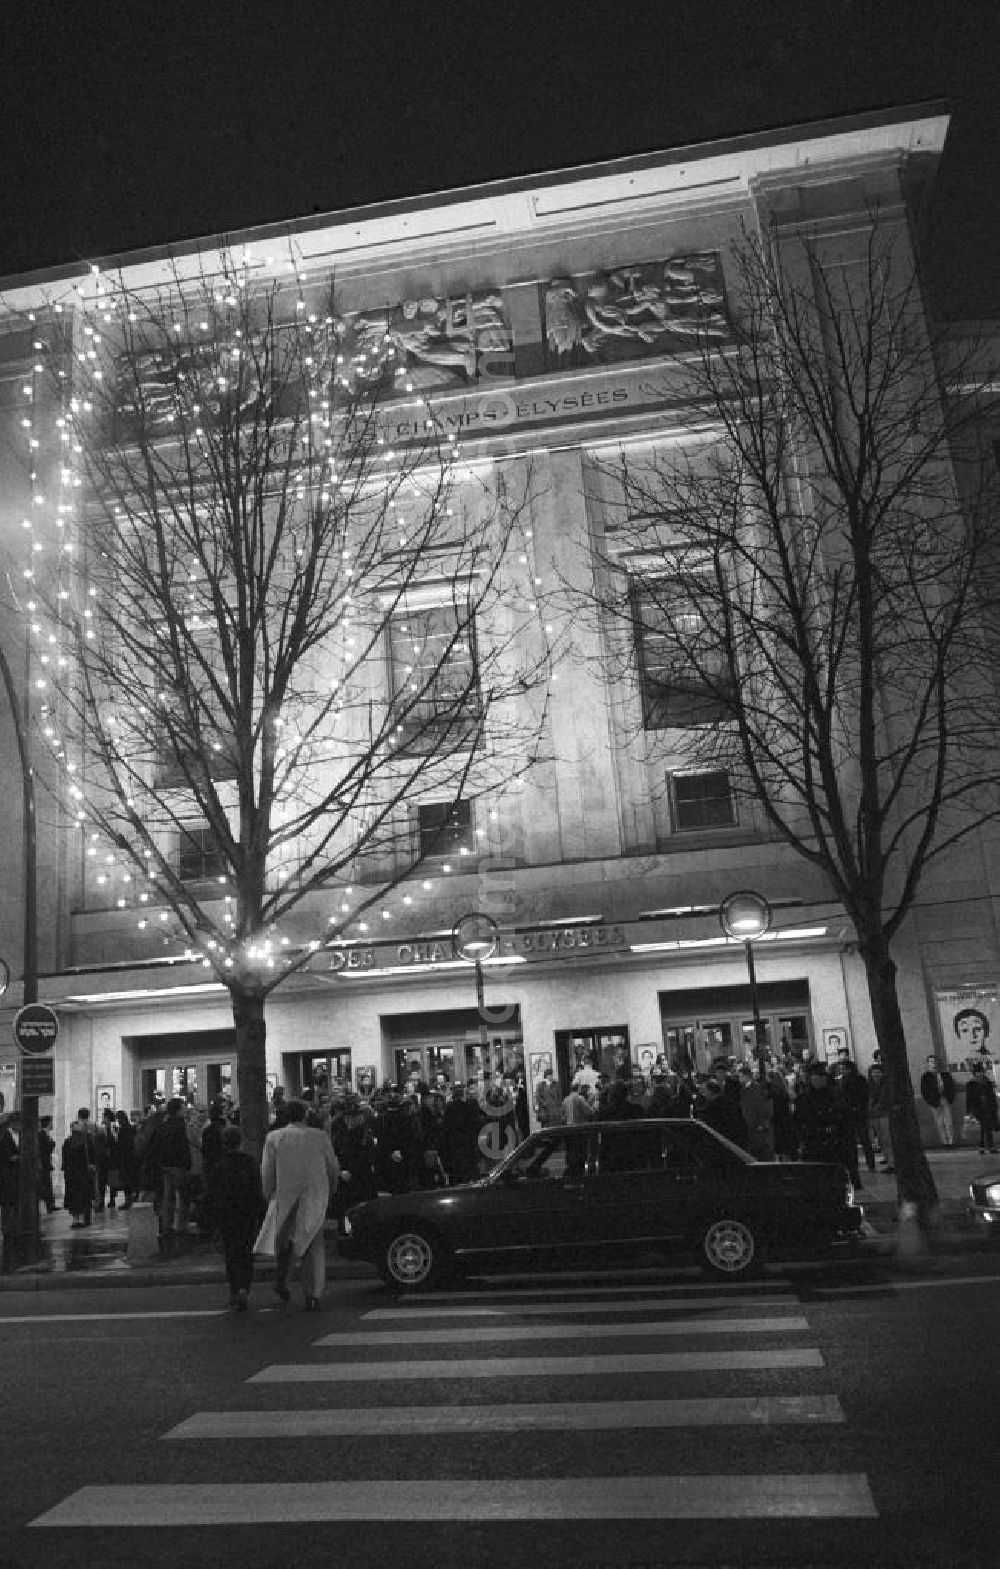 GDR image archive: Paris - Nachtaufnahme: Erich Honecker, Vorsitzender des Staatsrates DDR, besucht eine Vorführung des berühmten Pantomimen Marcel Marceau im Theatre des Champs Elysees in Paris. Zuschauer und Fotografen warten vor dem Theater auf Ankunft von Erich Honecker.